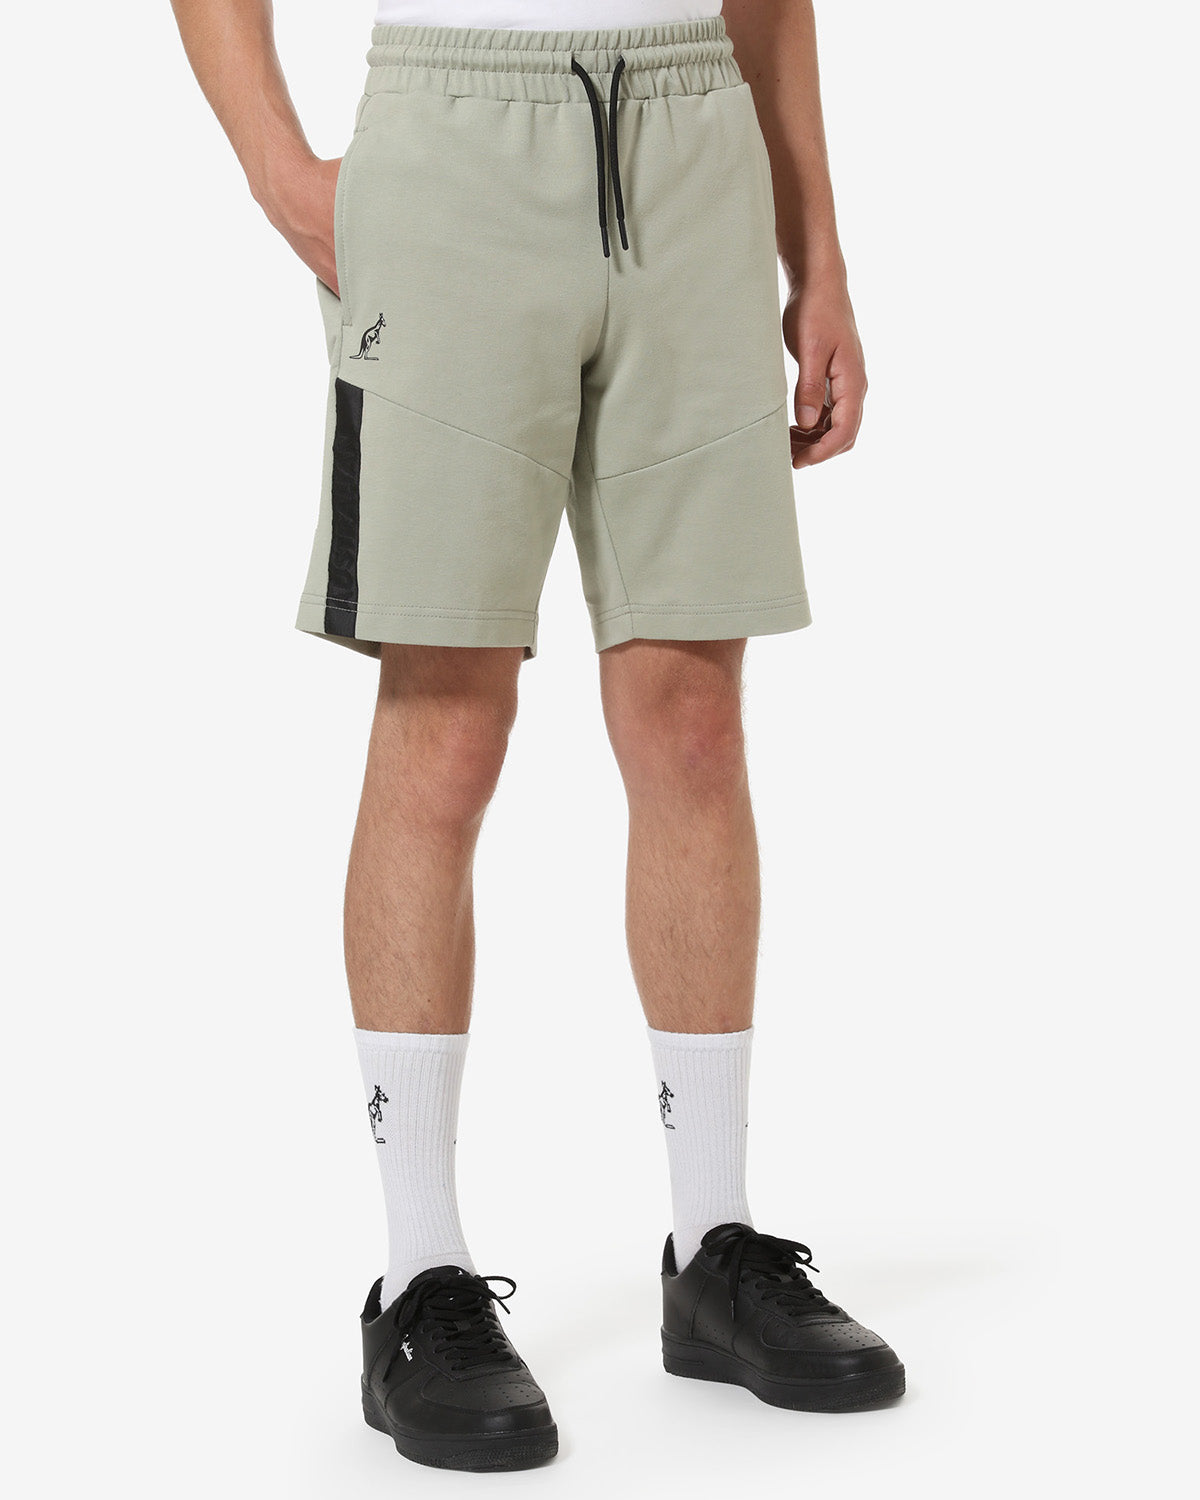 Impact Shorts: Australian Sportswear